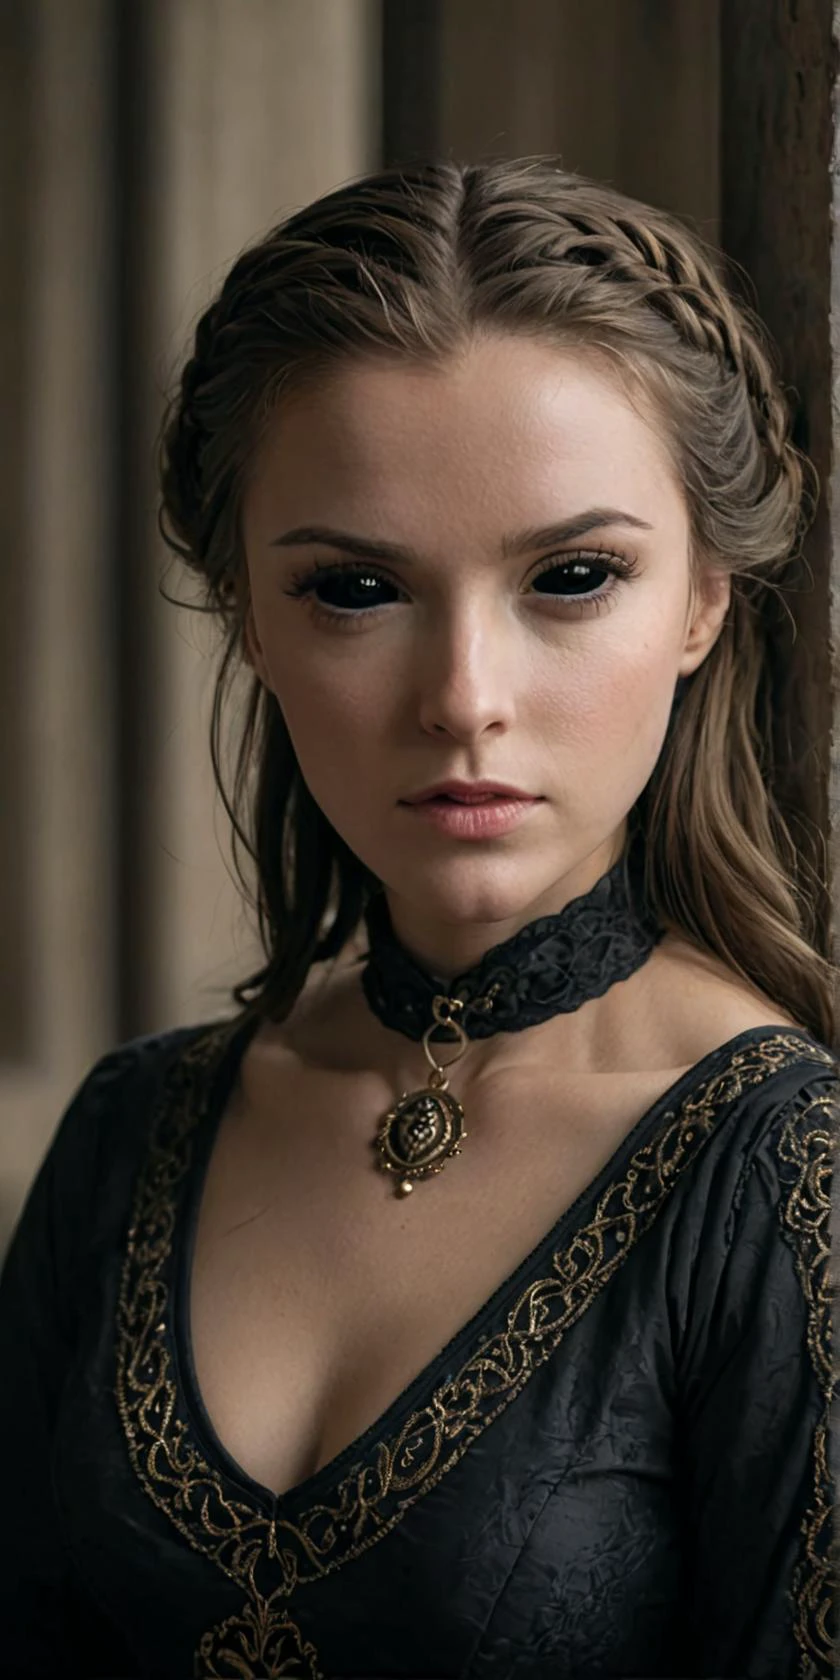 (清晰对焦 电影级 戏剧性 8k 照片 高品质:1.1),
一位身穿中世纪服饰的可爱女子肖像，巩膜呈黑色